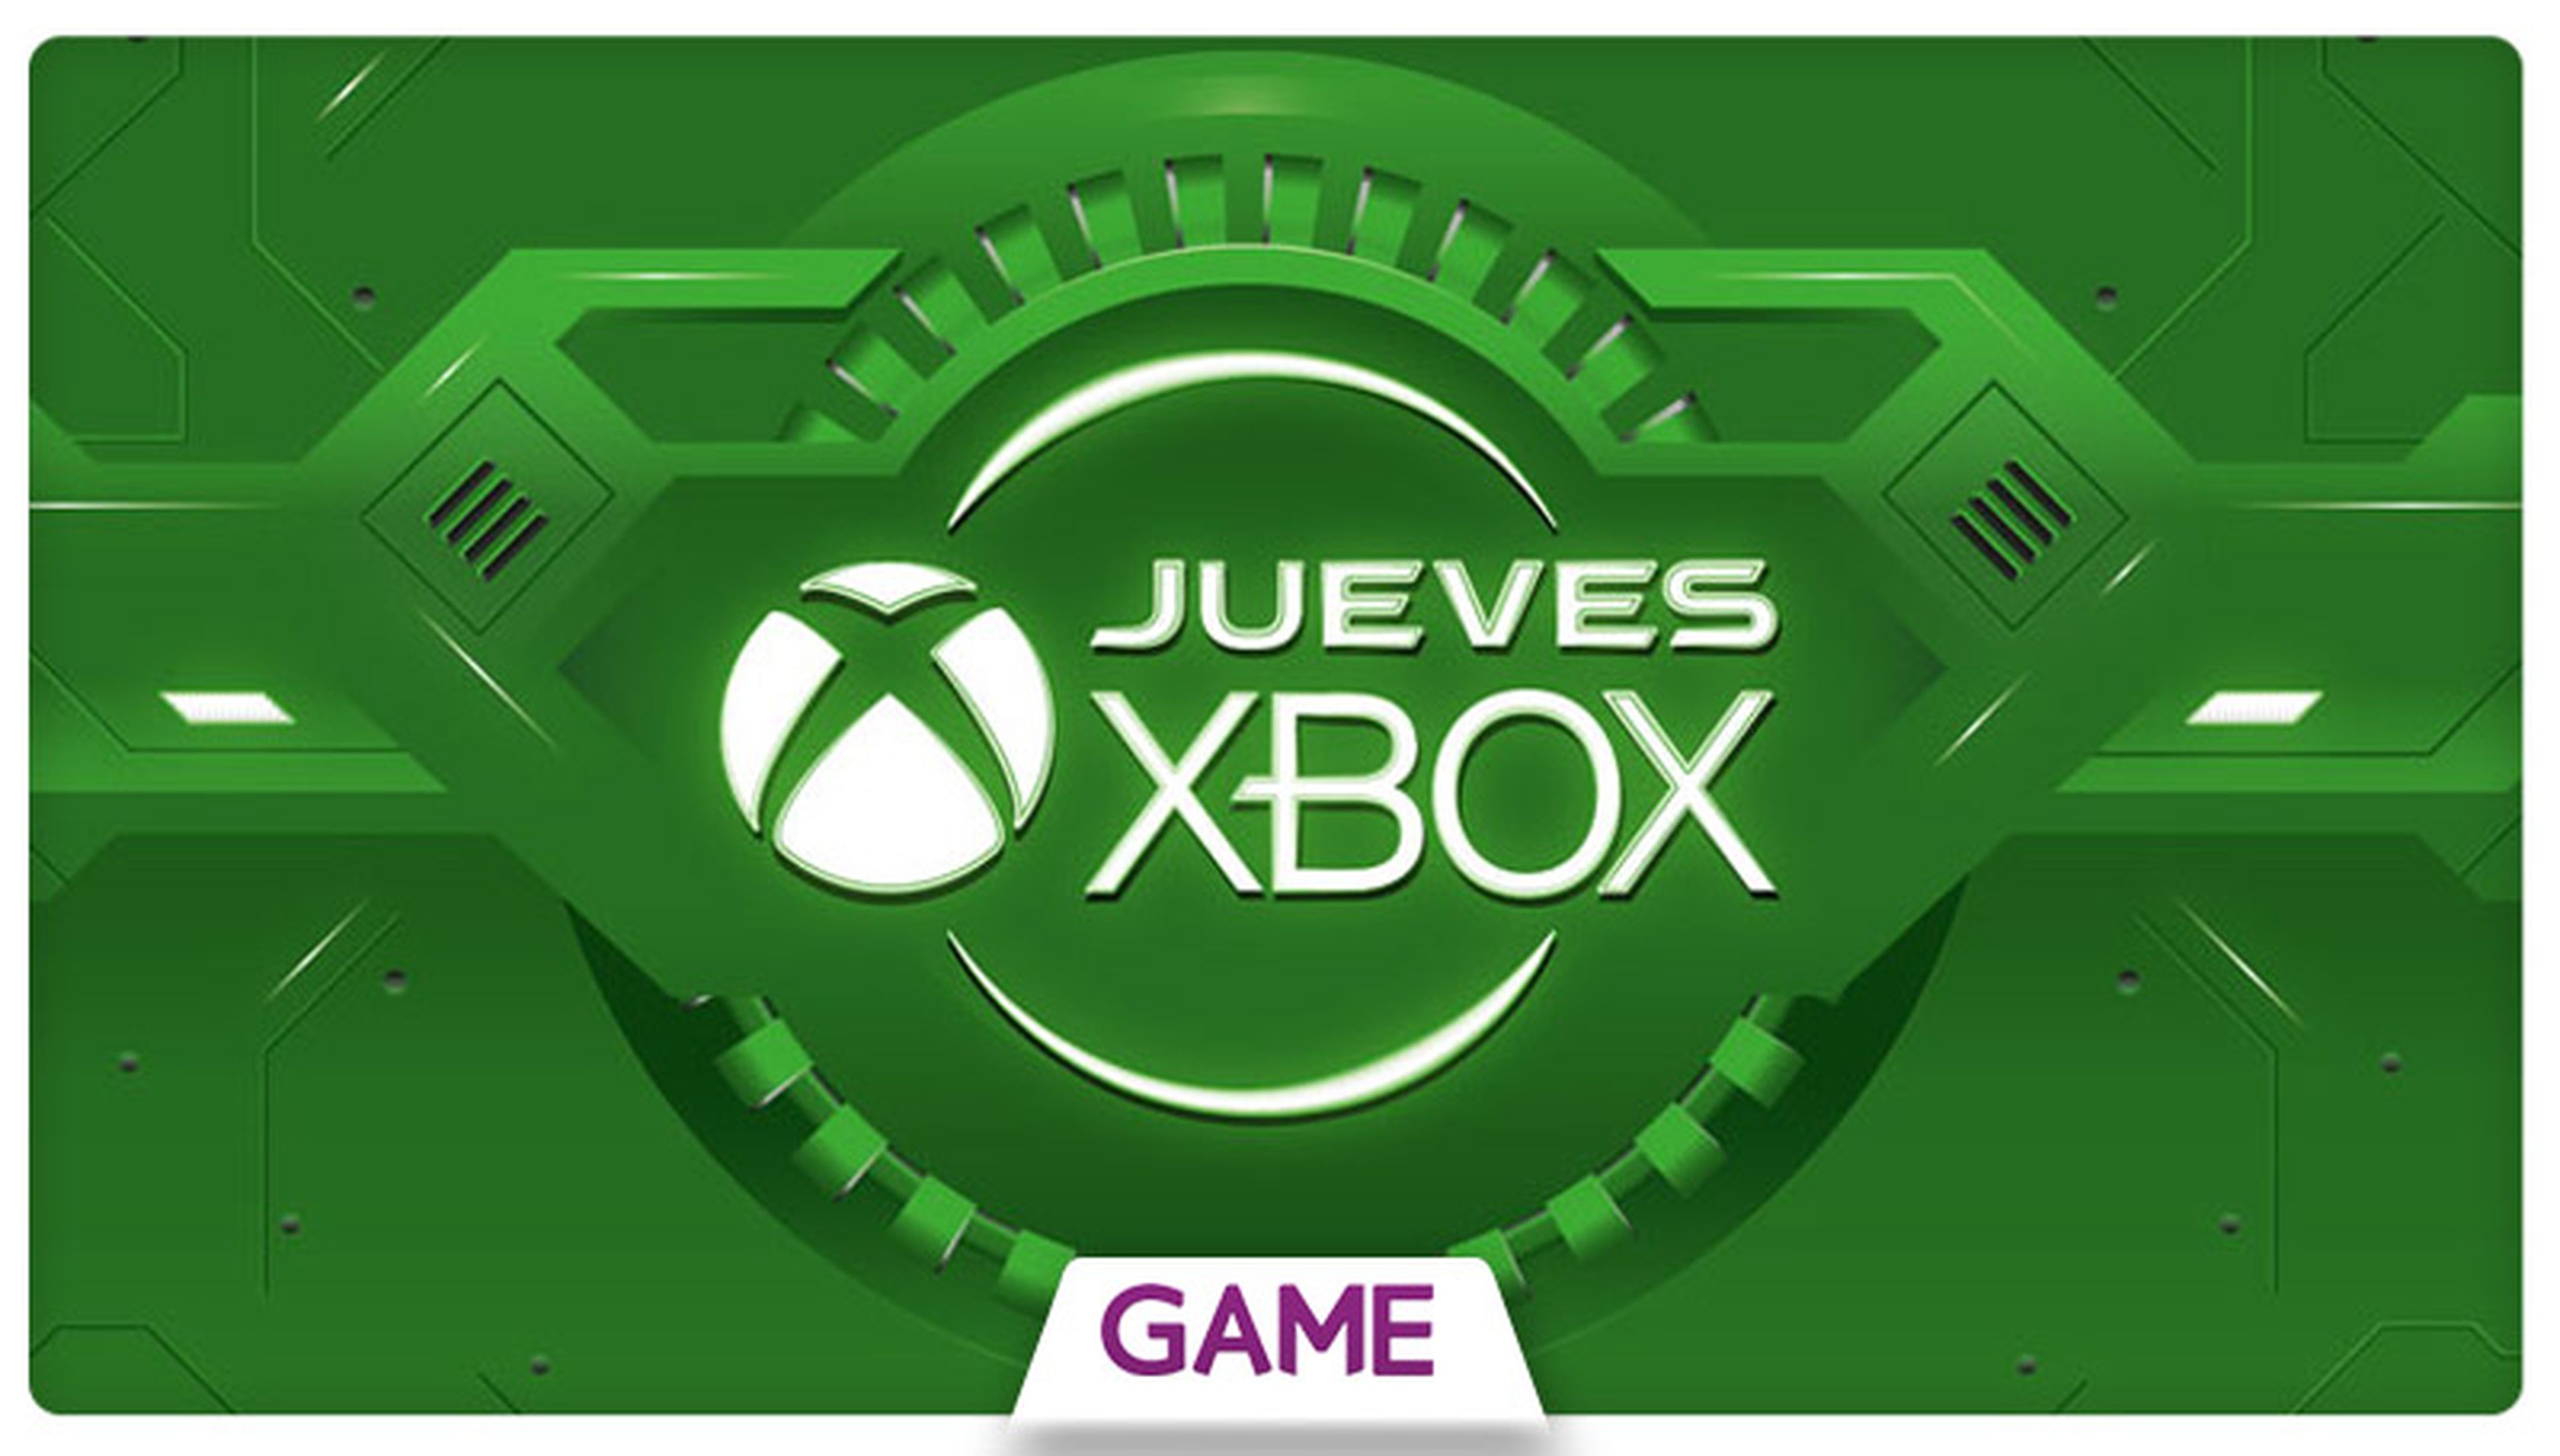 Jueves Xbox en GAME: Ofertas del 27/08/2015